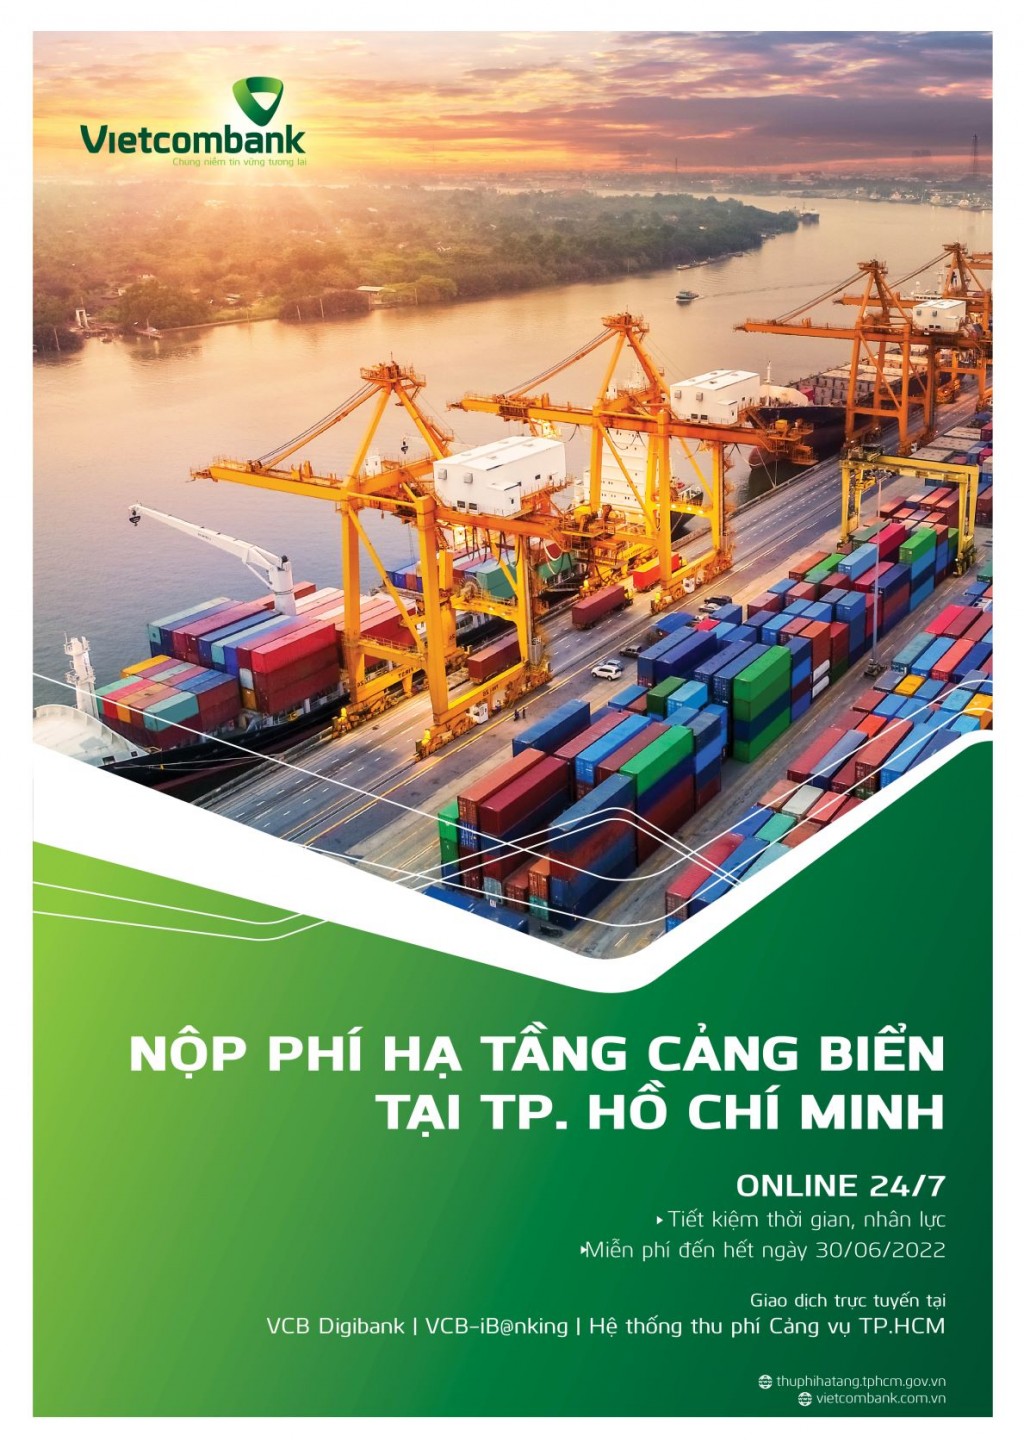 Vietcombank cung cấp dịch vụ nộp phí hạ tầng cảng biển online 24/7 tại TP HCM